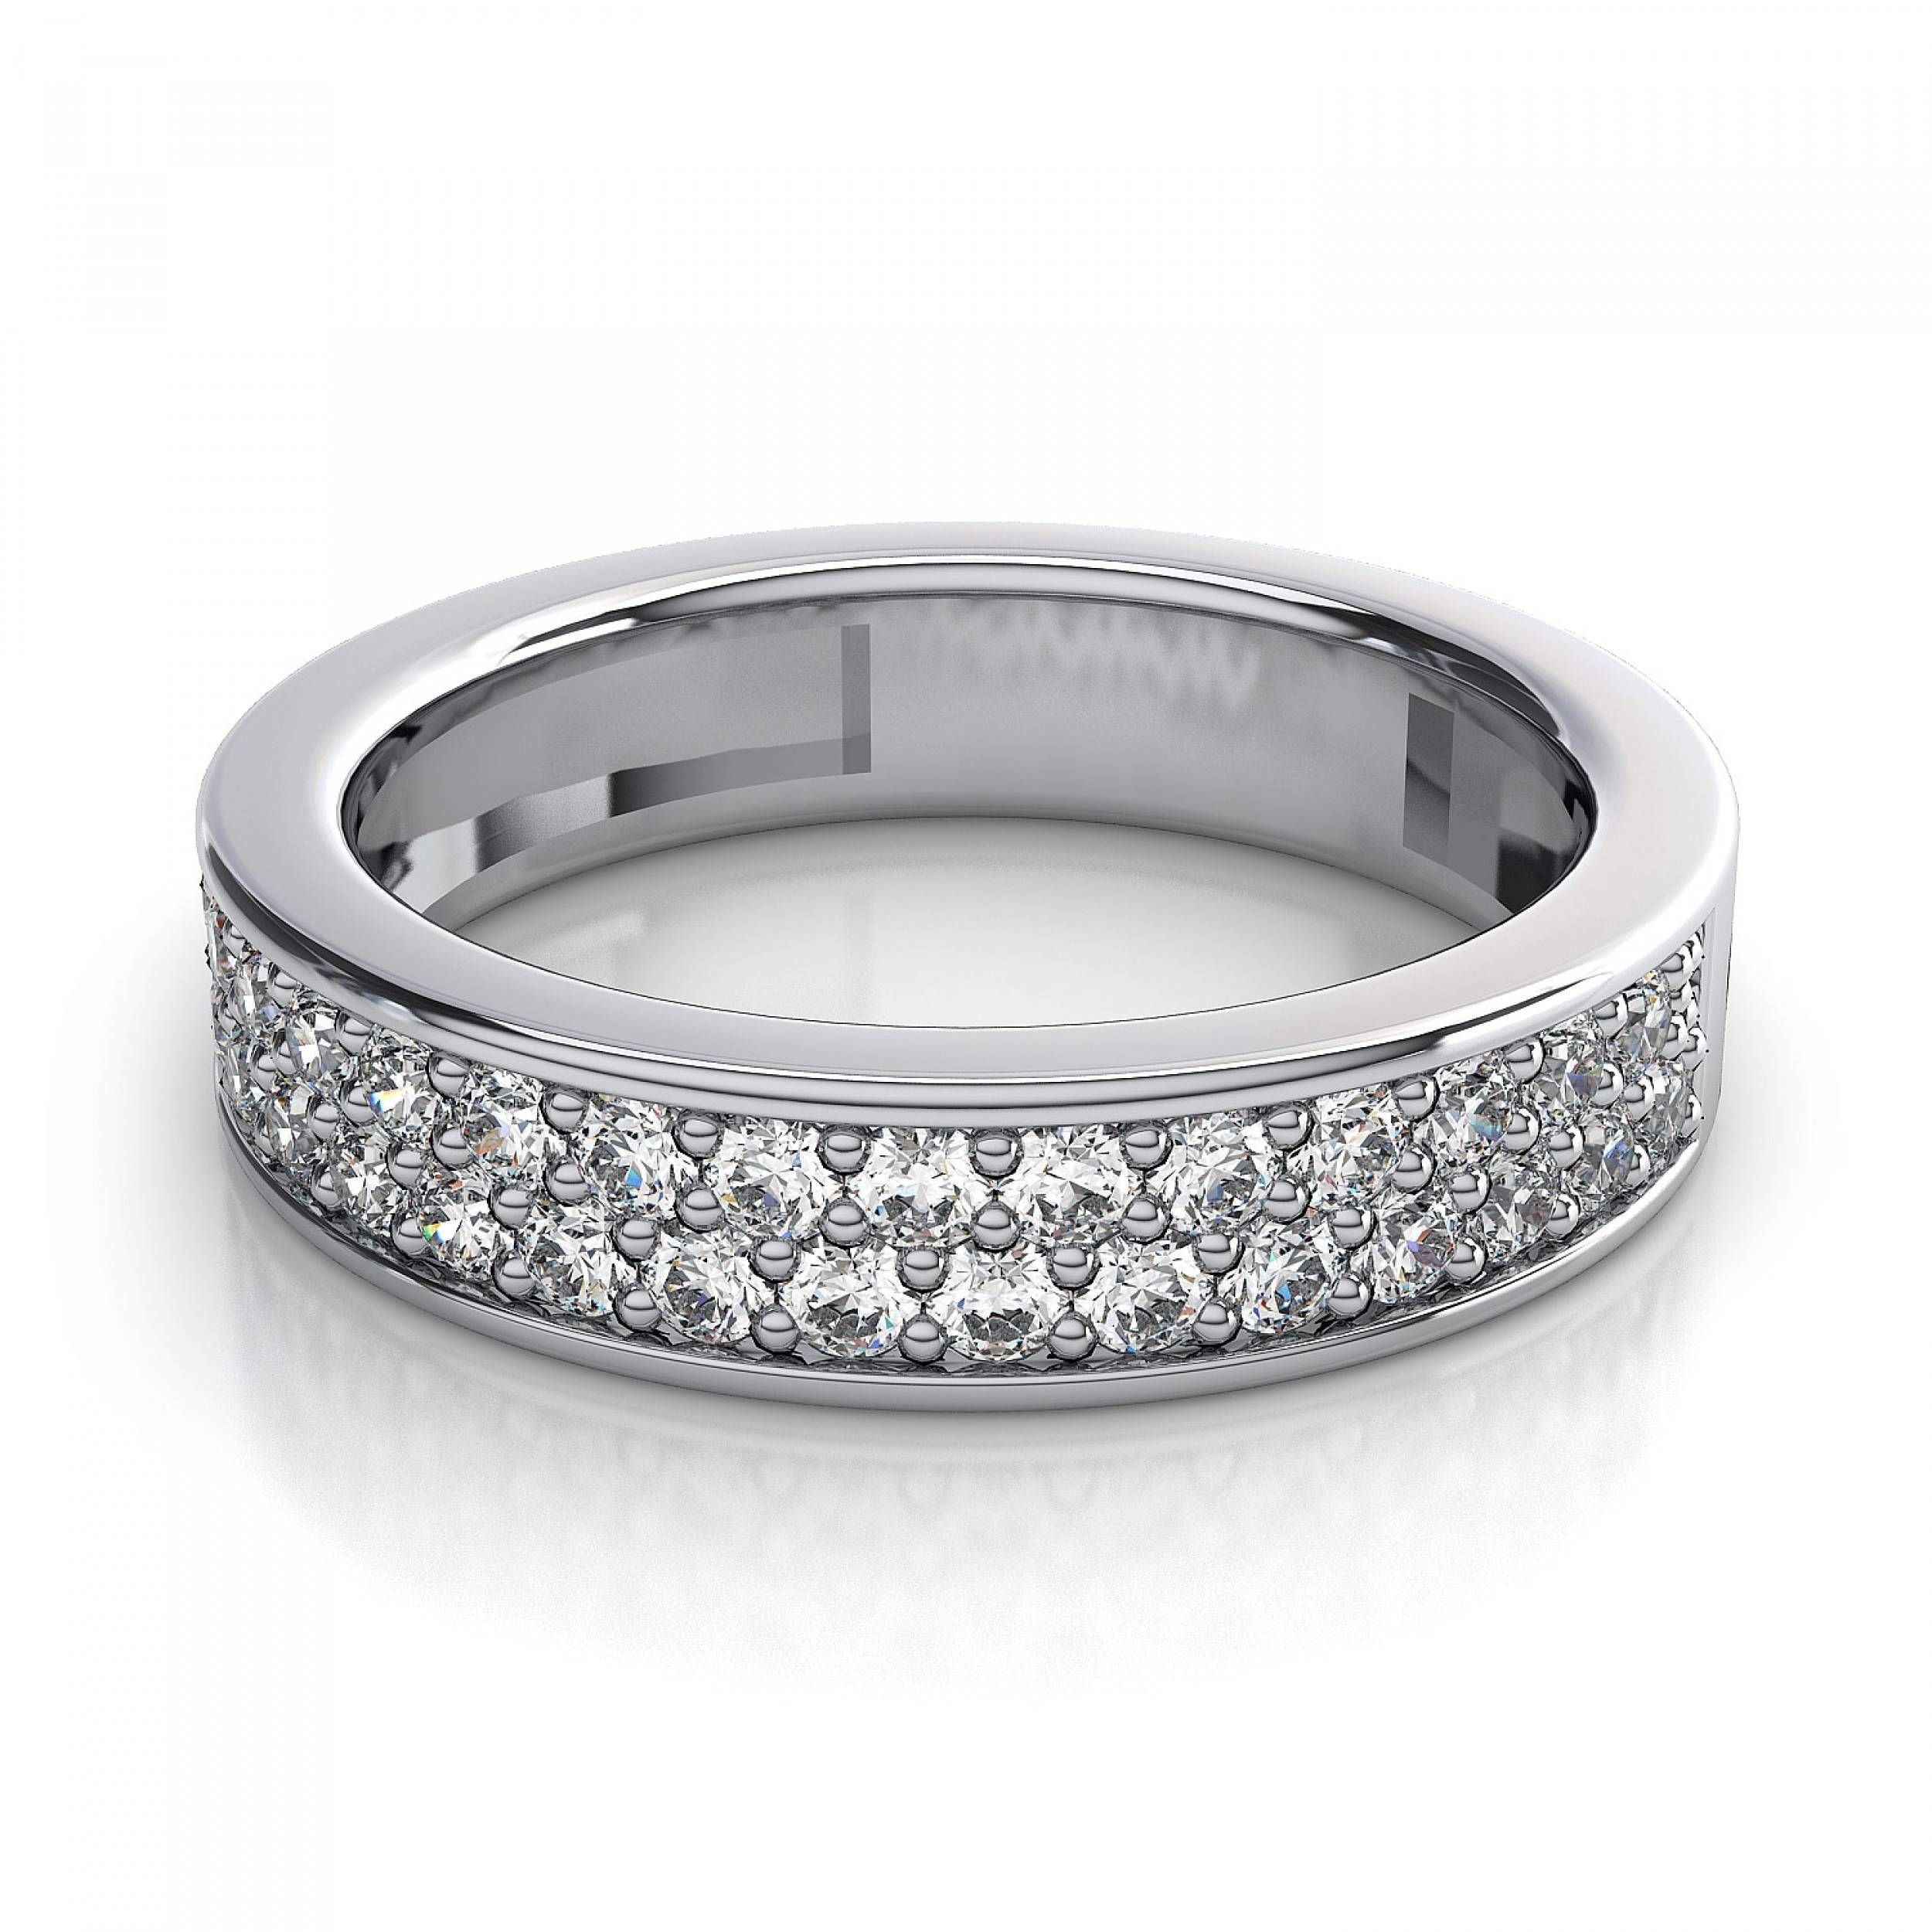 65 Carat Women's Rings Pave Diamond Wedding Ring In 14k White Gold Pertaining To 14k White Gold Wedding Rings (View 10 of 15)